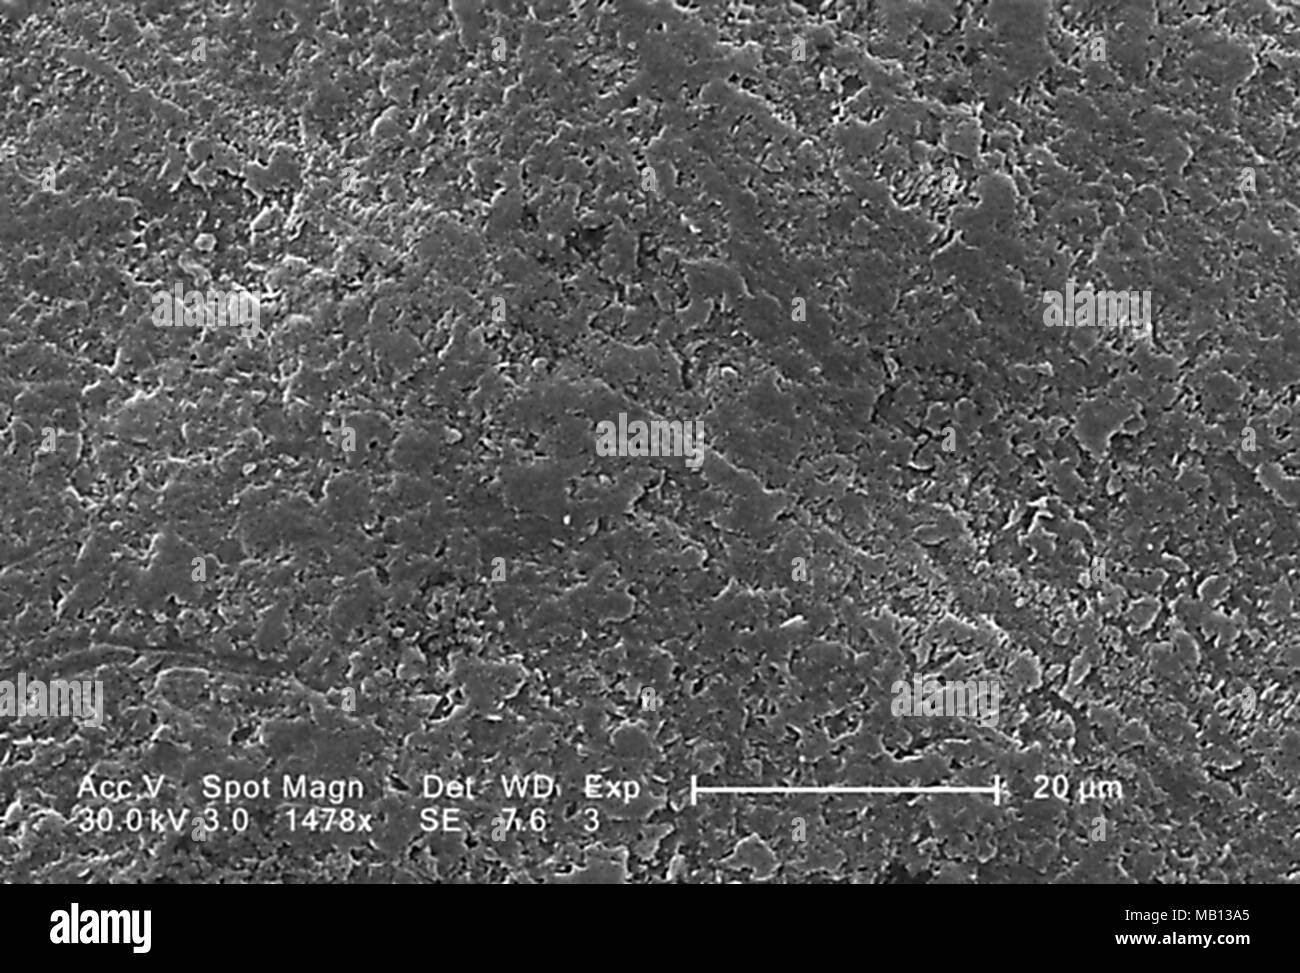 Superficie rugosa de un espécimen de la especie Vitis uva de mesa blanco reveló en el 1478 x magnificada análisis microscópico de electrones (SEM) de imagen, 2005. Imagen cortesía de los Centros para el Control de Enfermedades (CDC). () Foto de stock